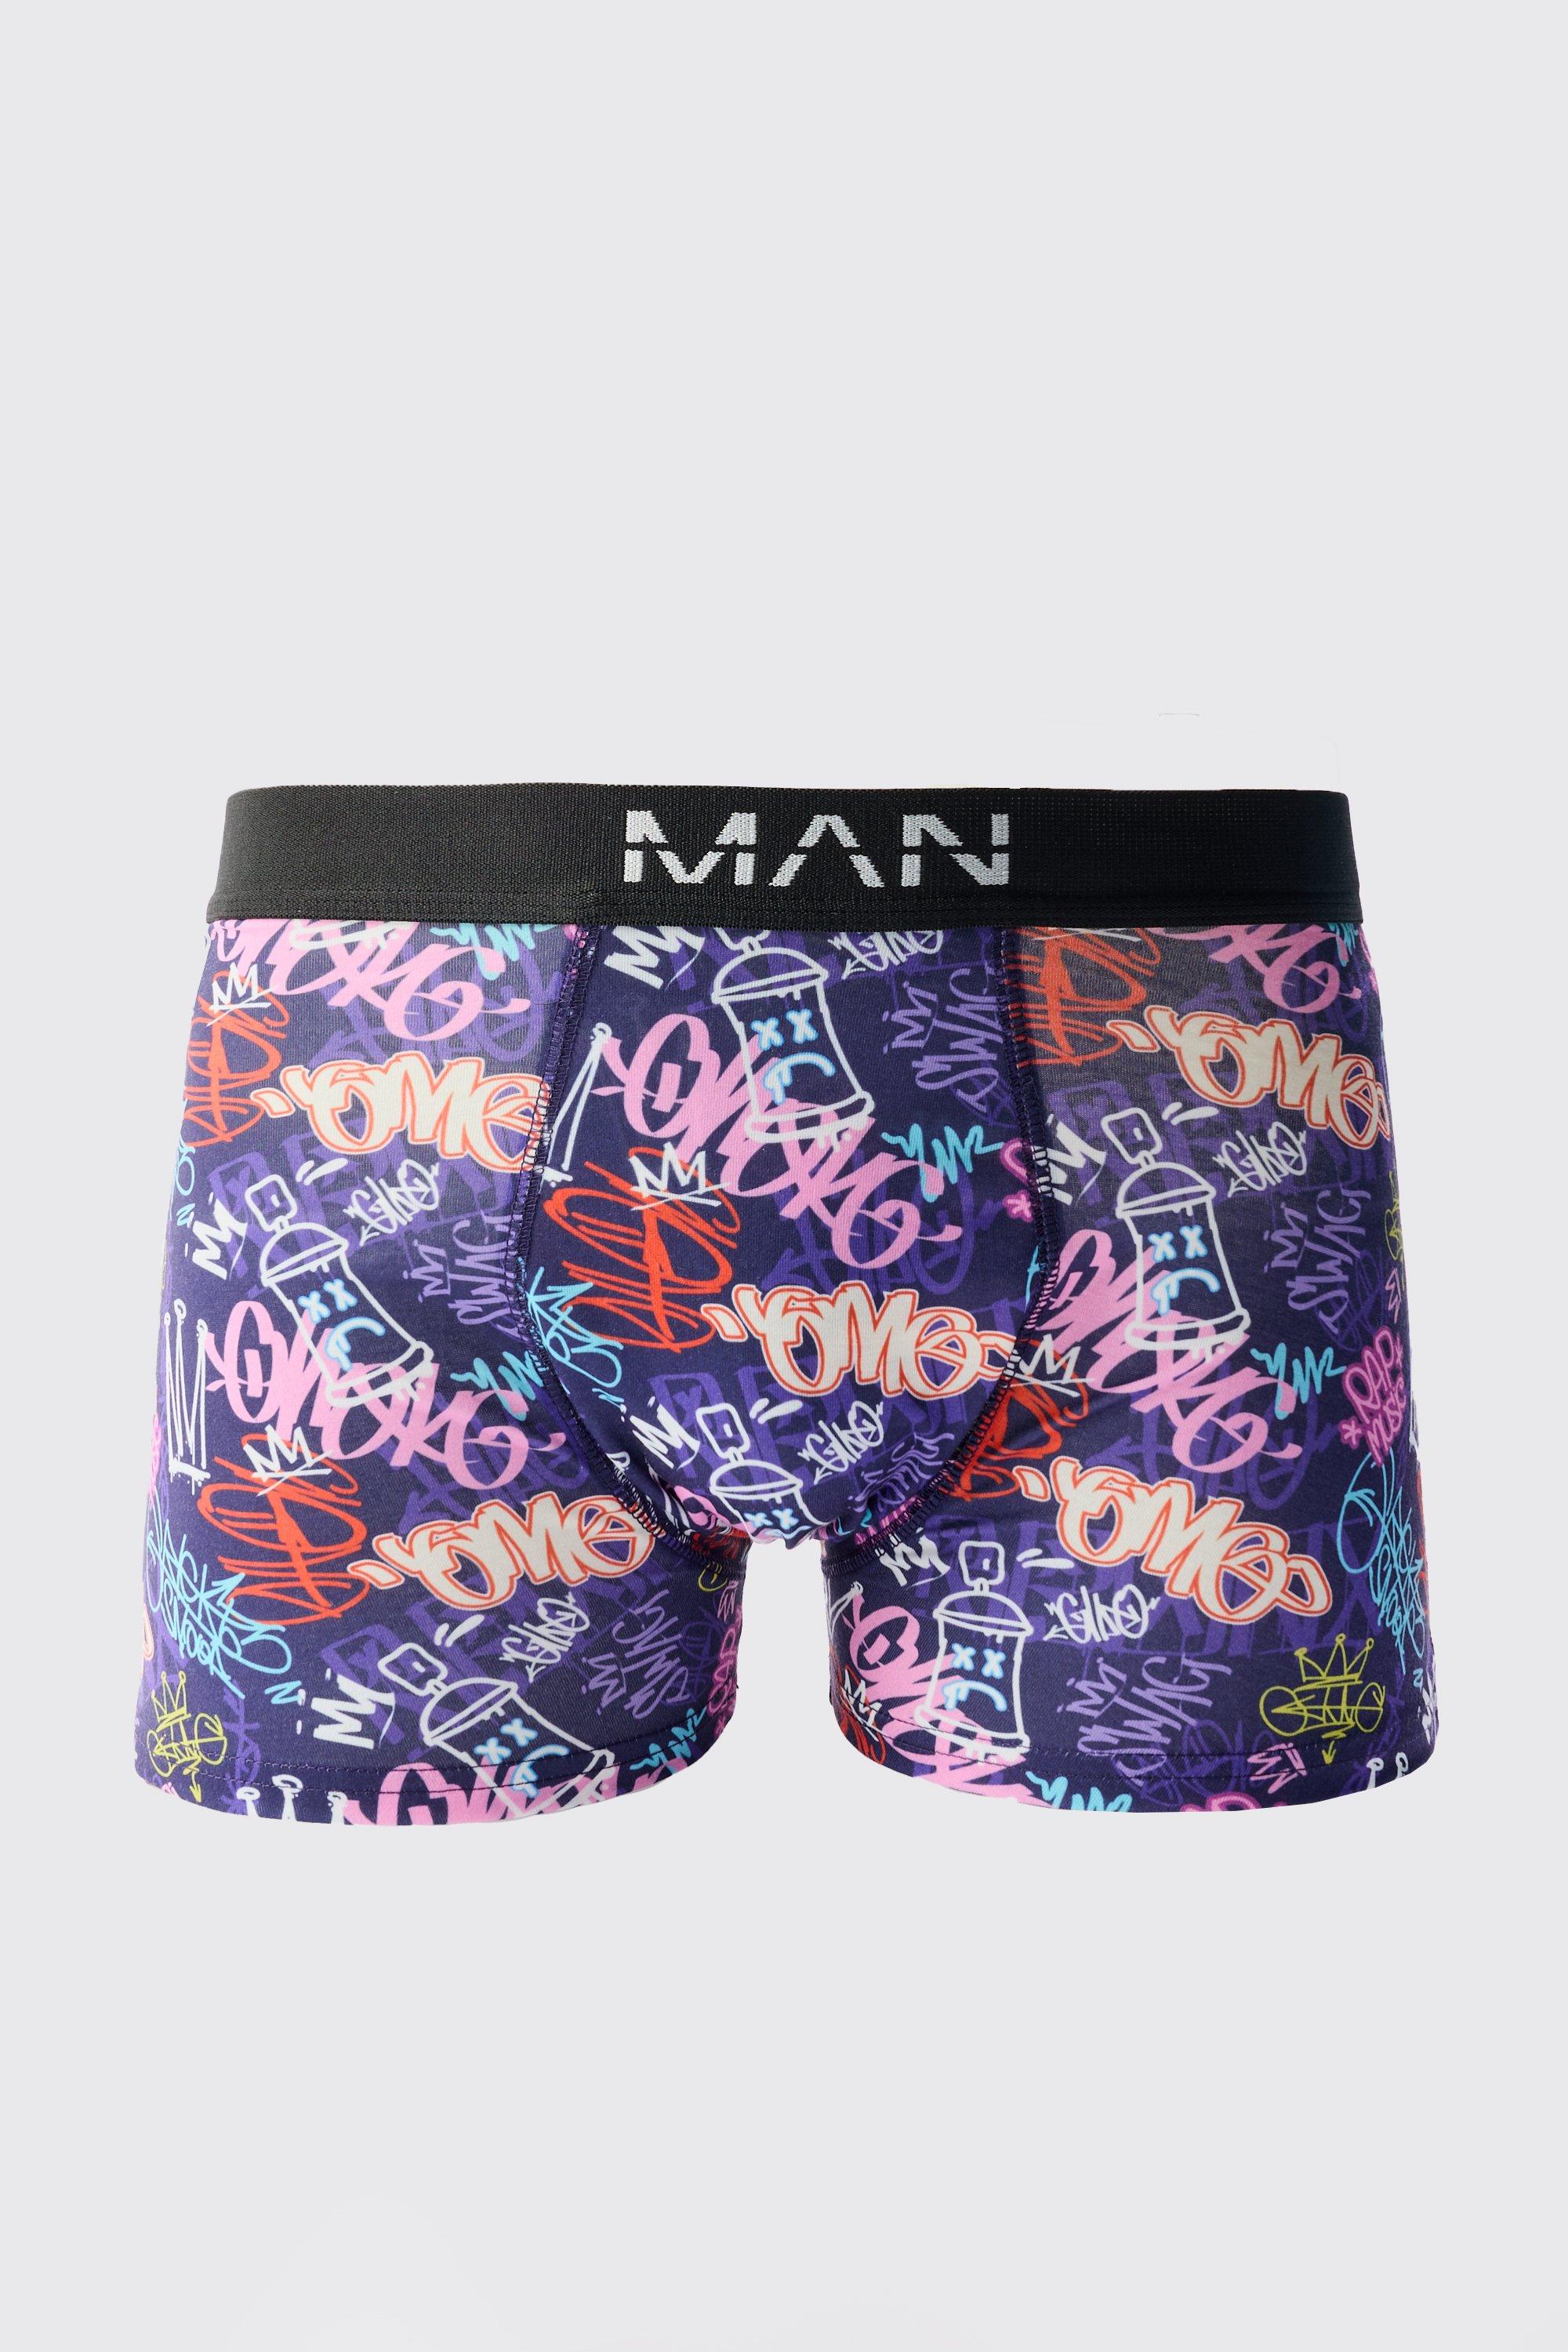 graffiti print boxers homme - violet - m, violet